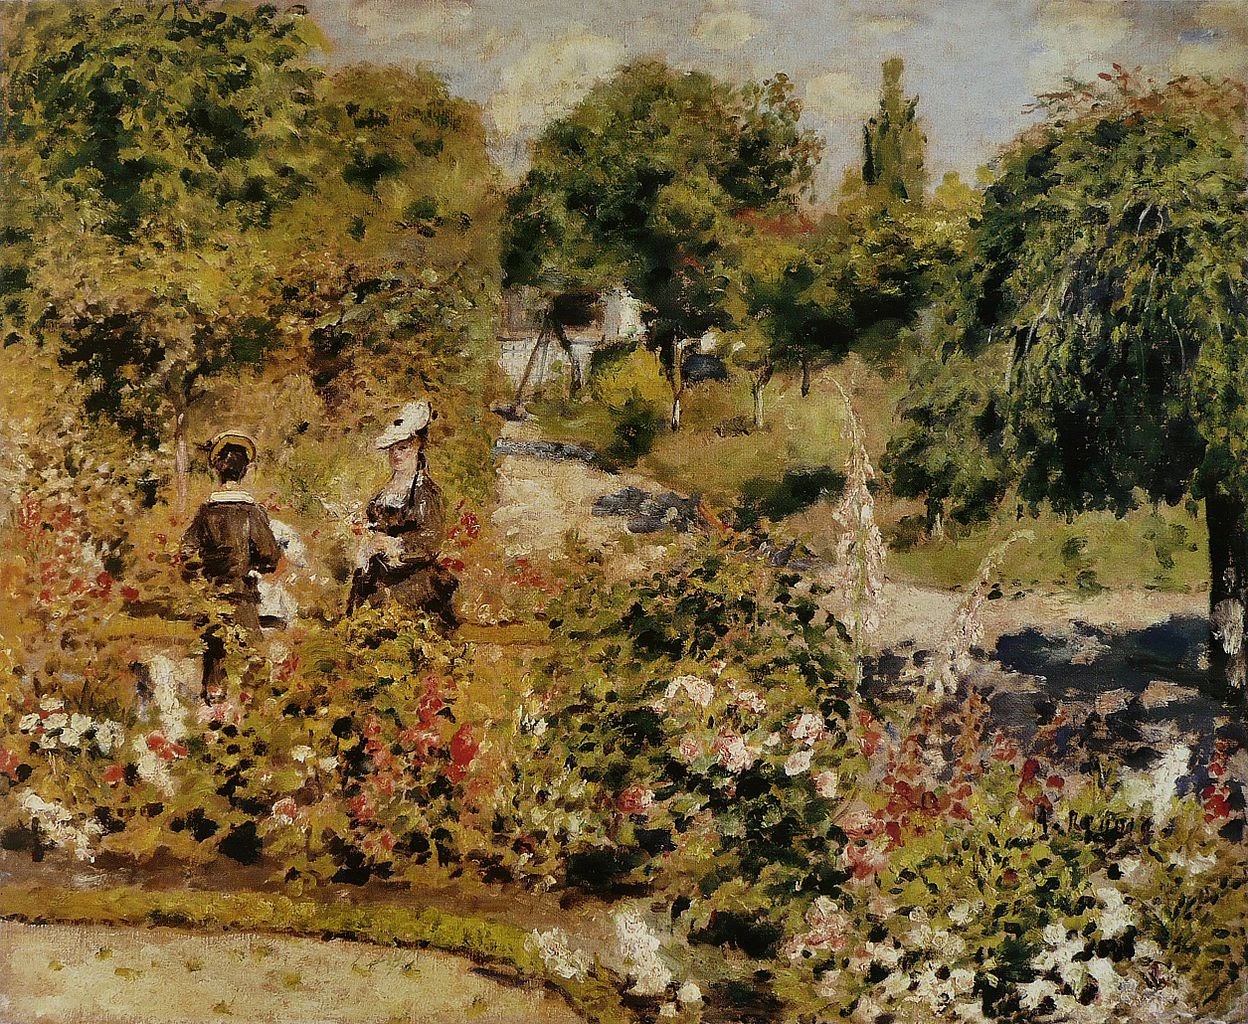 Pierre+Auguste+Renoir-1841-1-19 (735).jpg